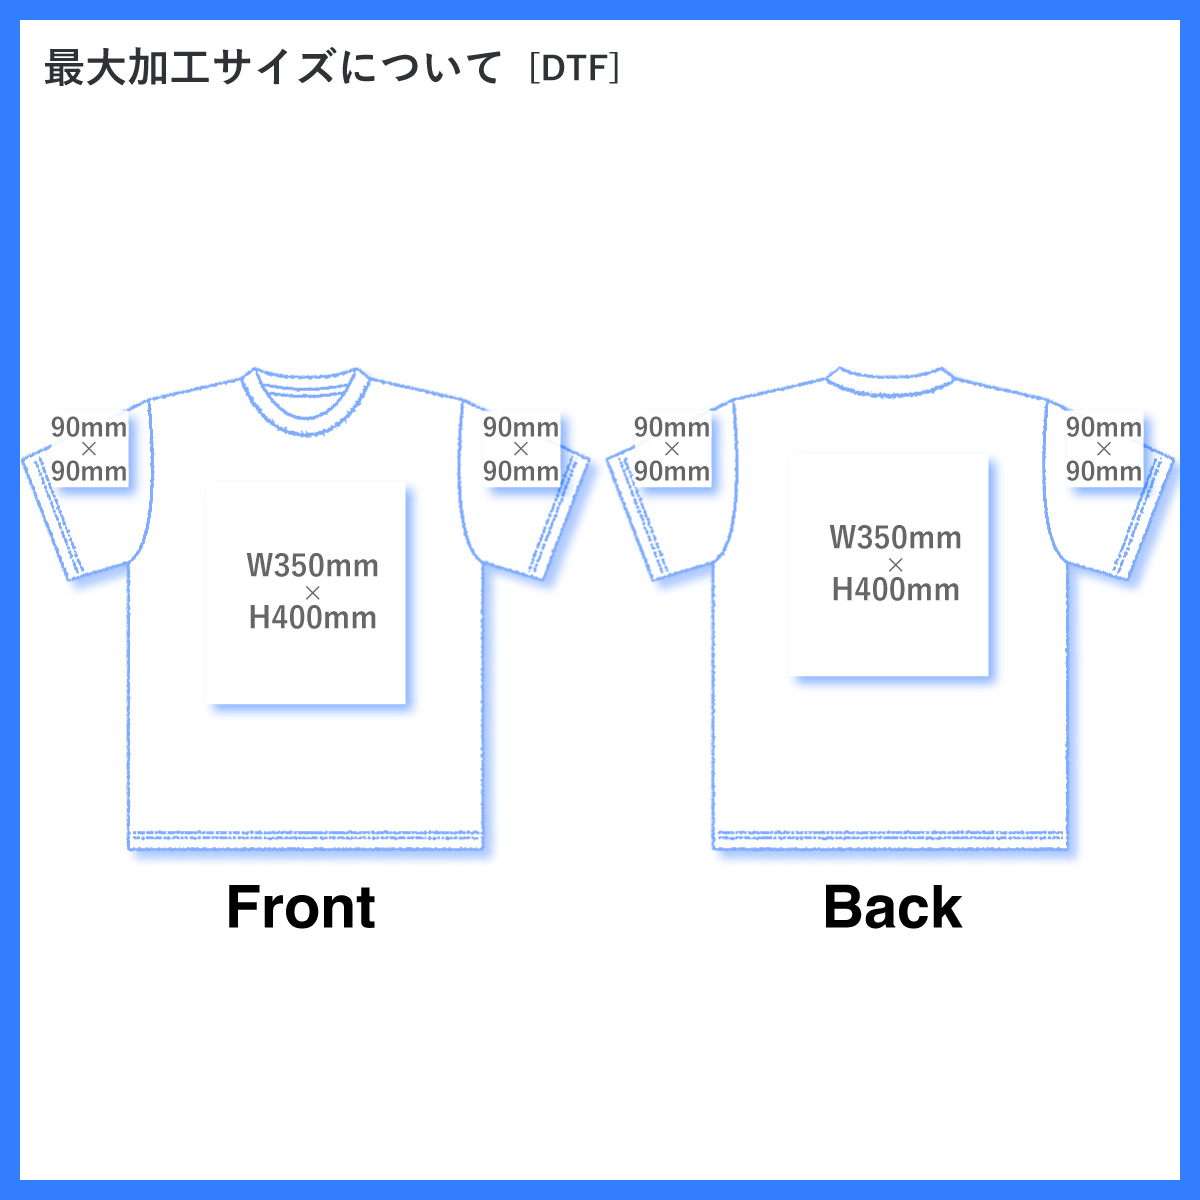 GILDAN ギルダン 6.0 oz ウルトラコットン Tシャツ (品番2000)